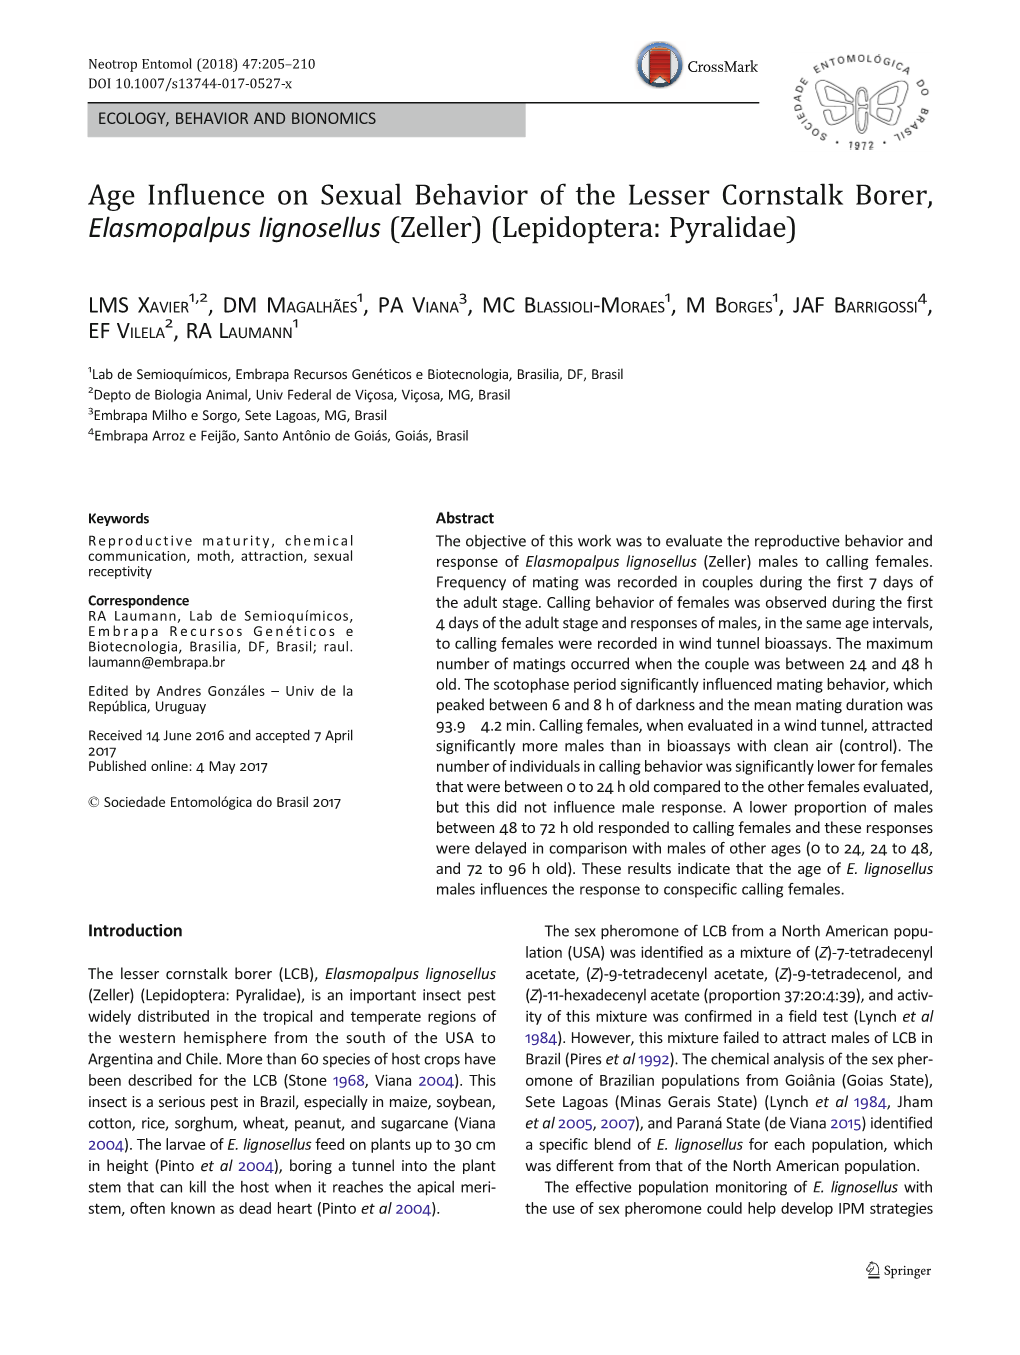 Age Influence on Sexual Behavior of the Lesser Cornstalk Borer, Elasmopalpus Lignosellus (Zeller) (Lepidoptera: Pyralidae)